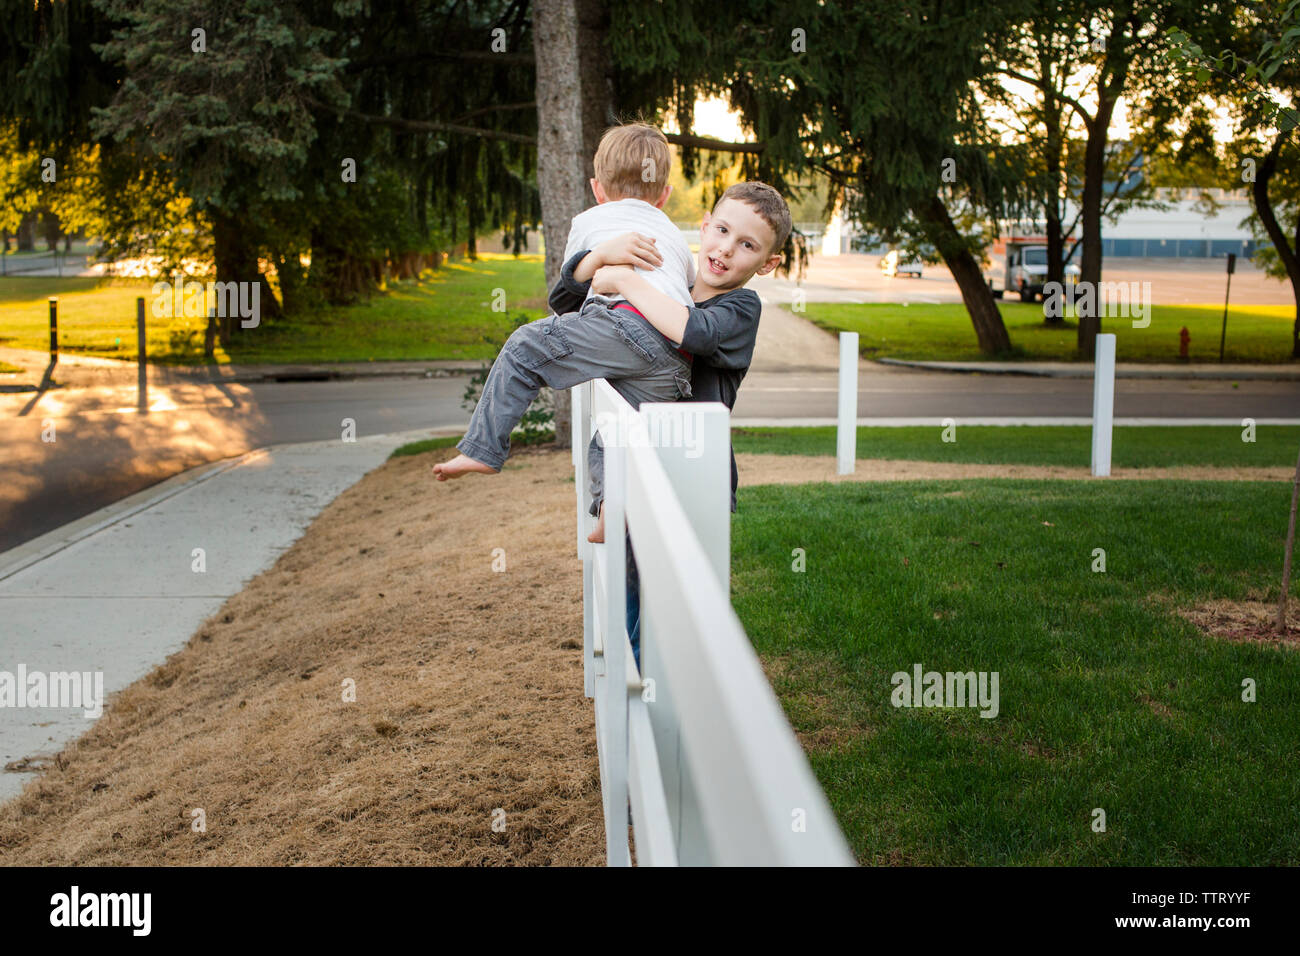 Un garçon aide son petit frère se mettre d'une clôture Banque D'Images